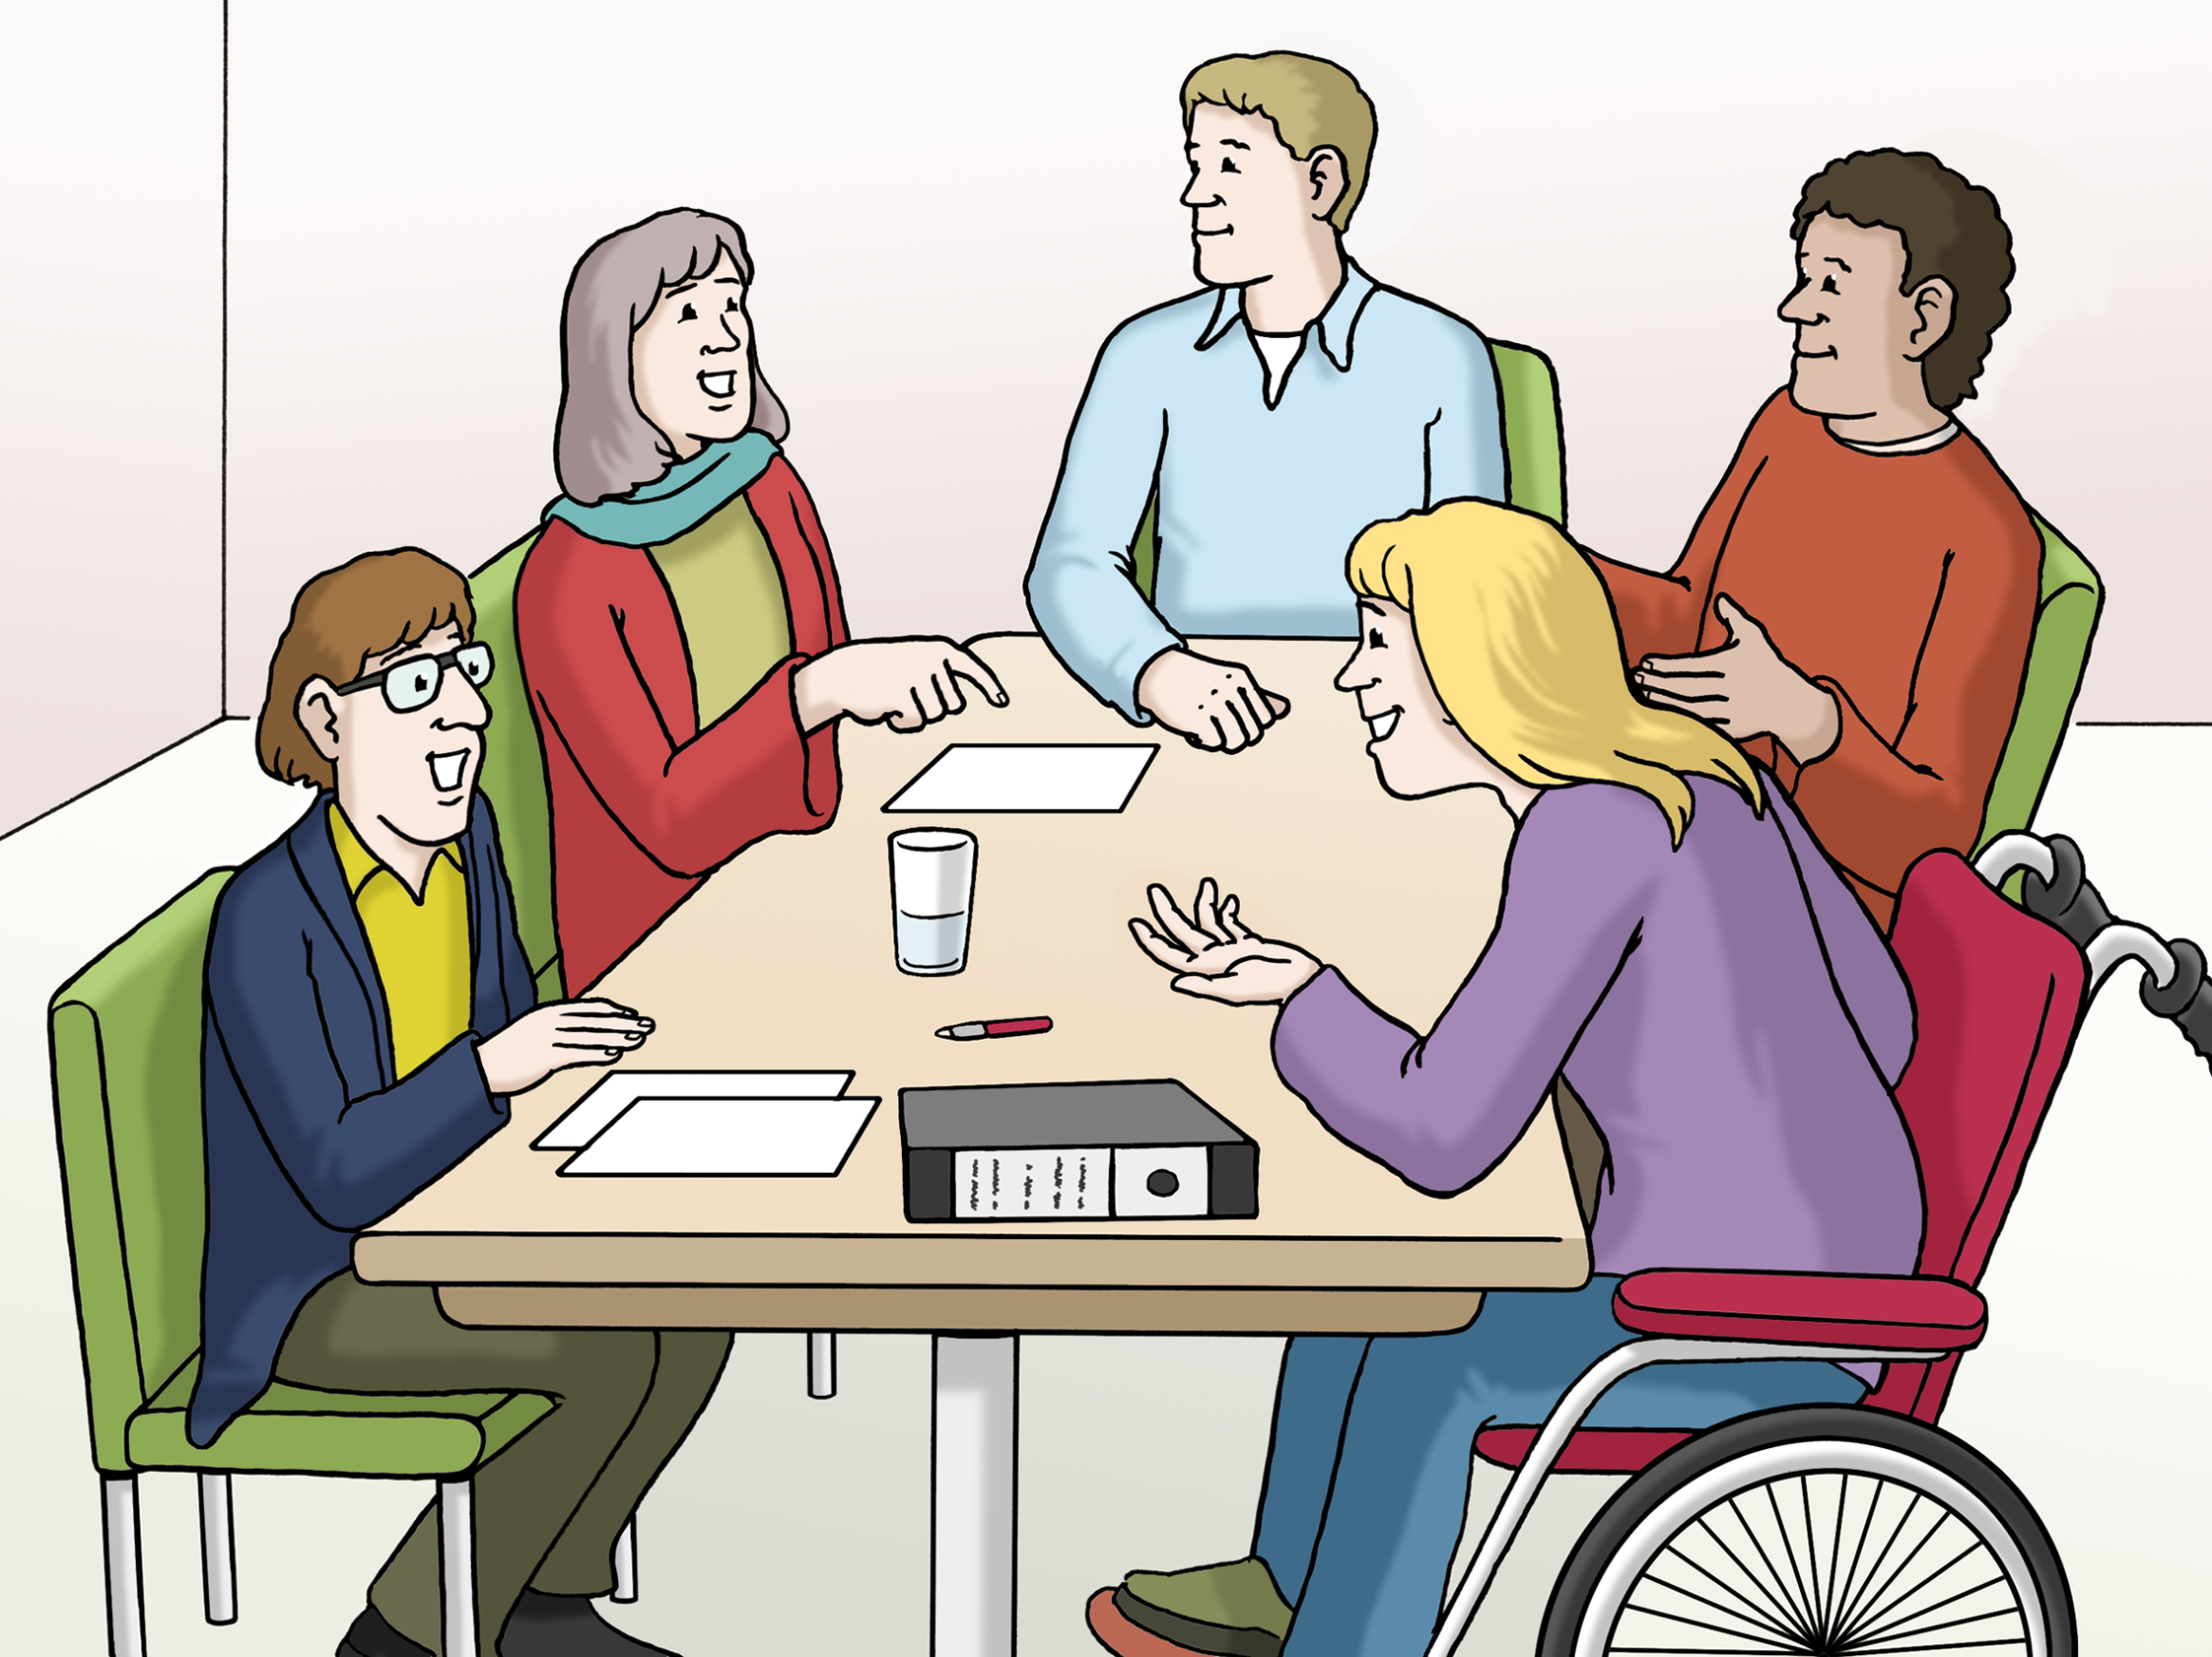 Illustration: Ein Team aus fünf Personen sitzt um einen Tisch herum und unterhält sich fröhlich angeregt.